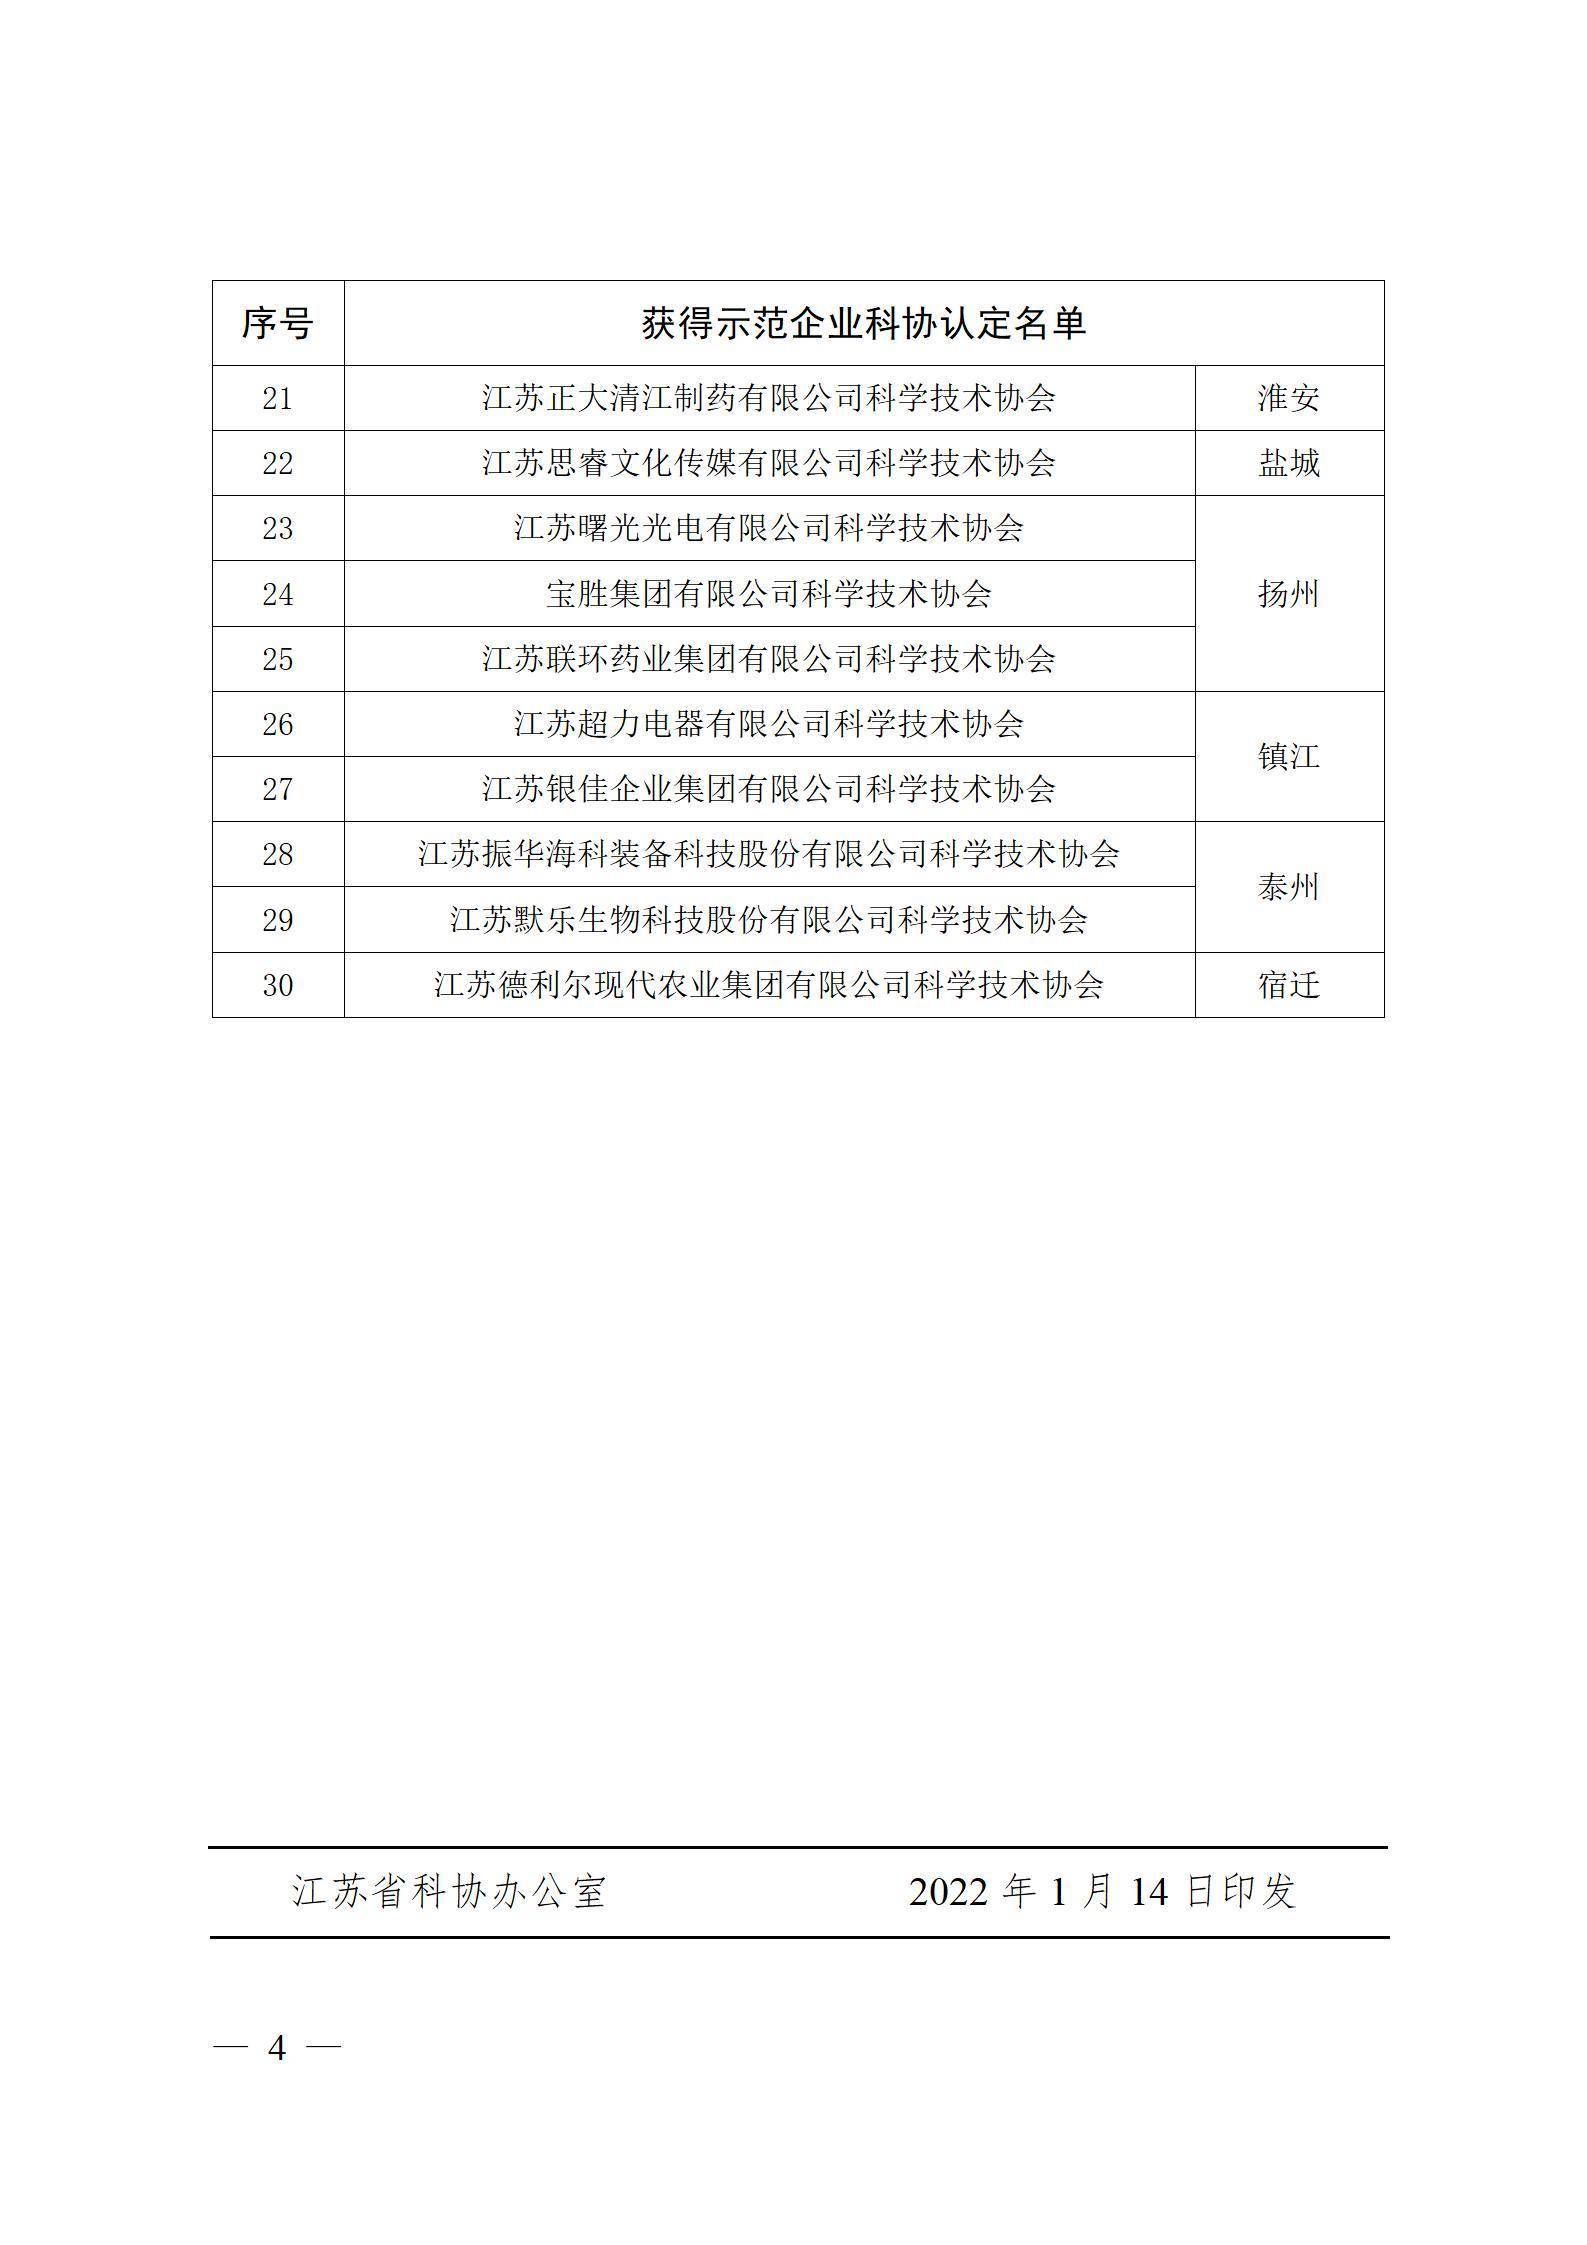 关于公布“2021年度江苏省示范企业科协”单位的通知_04.jpg